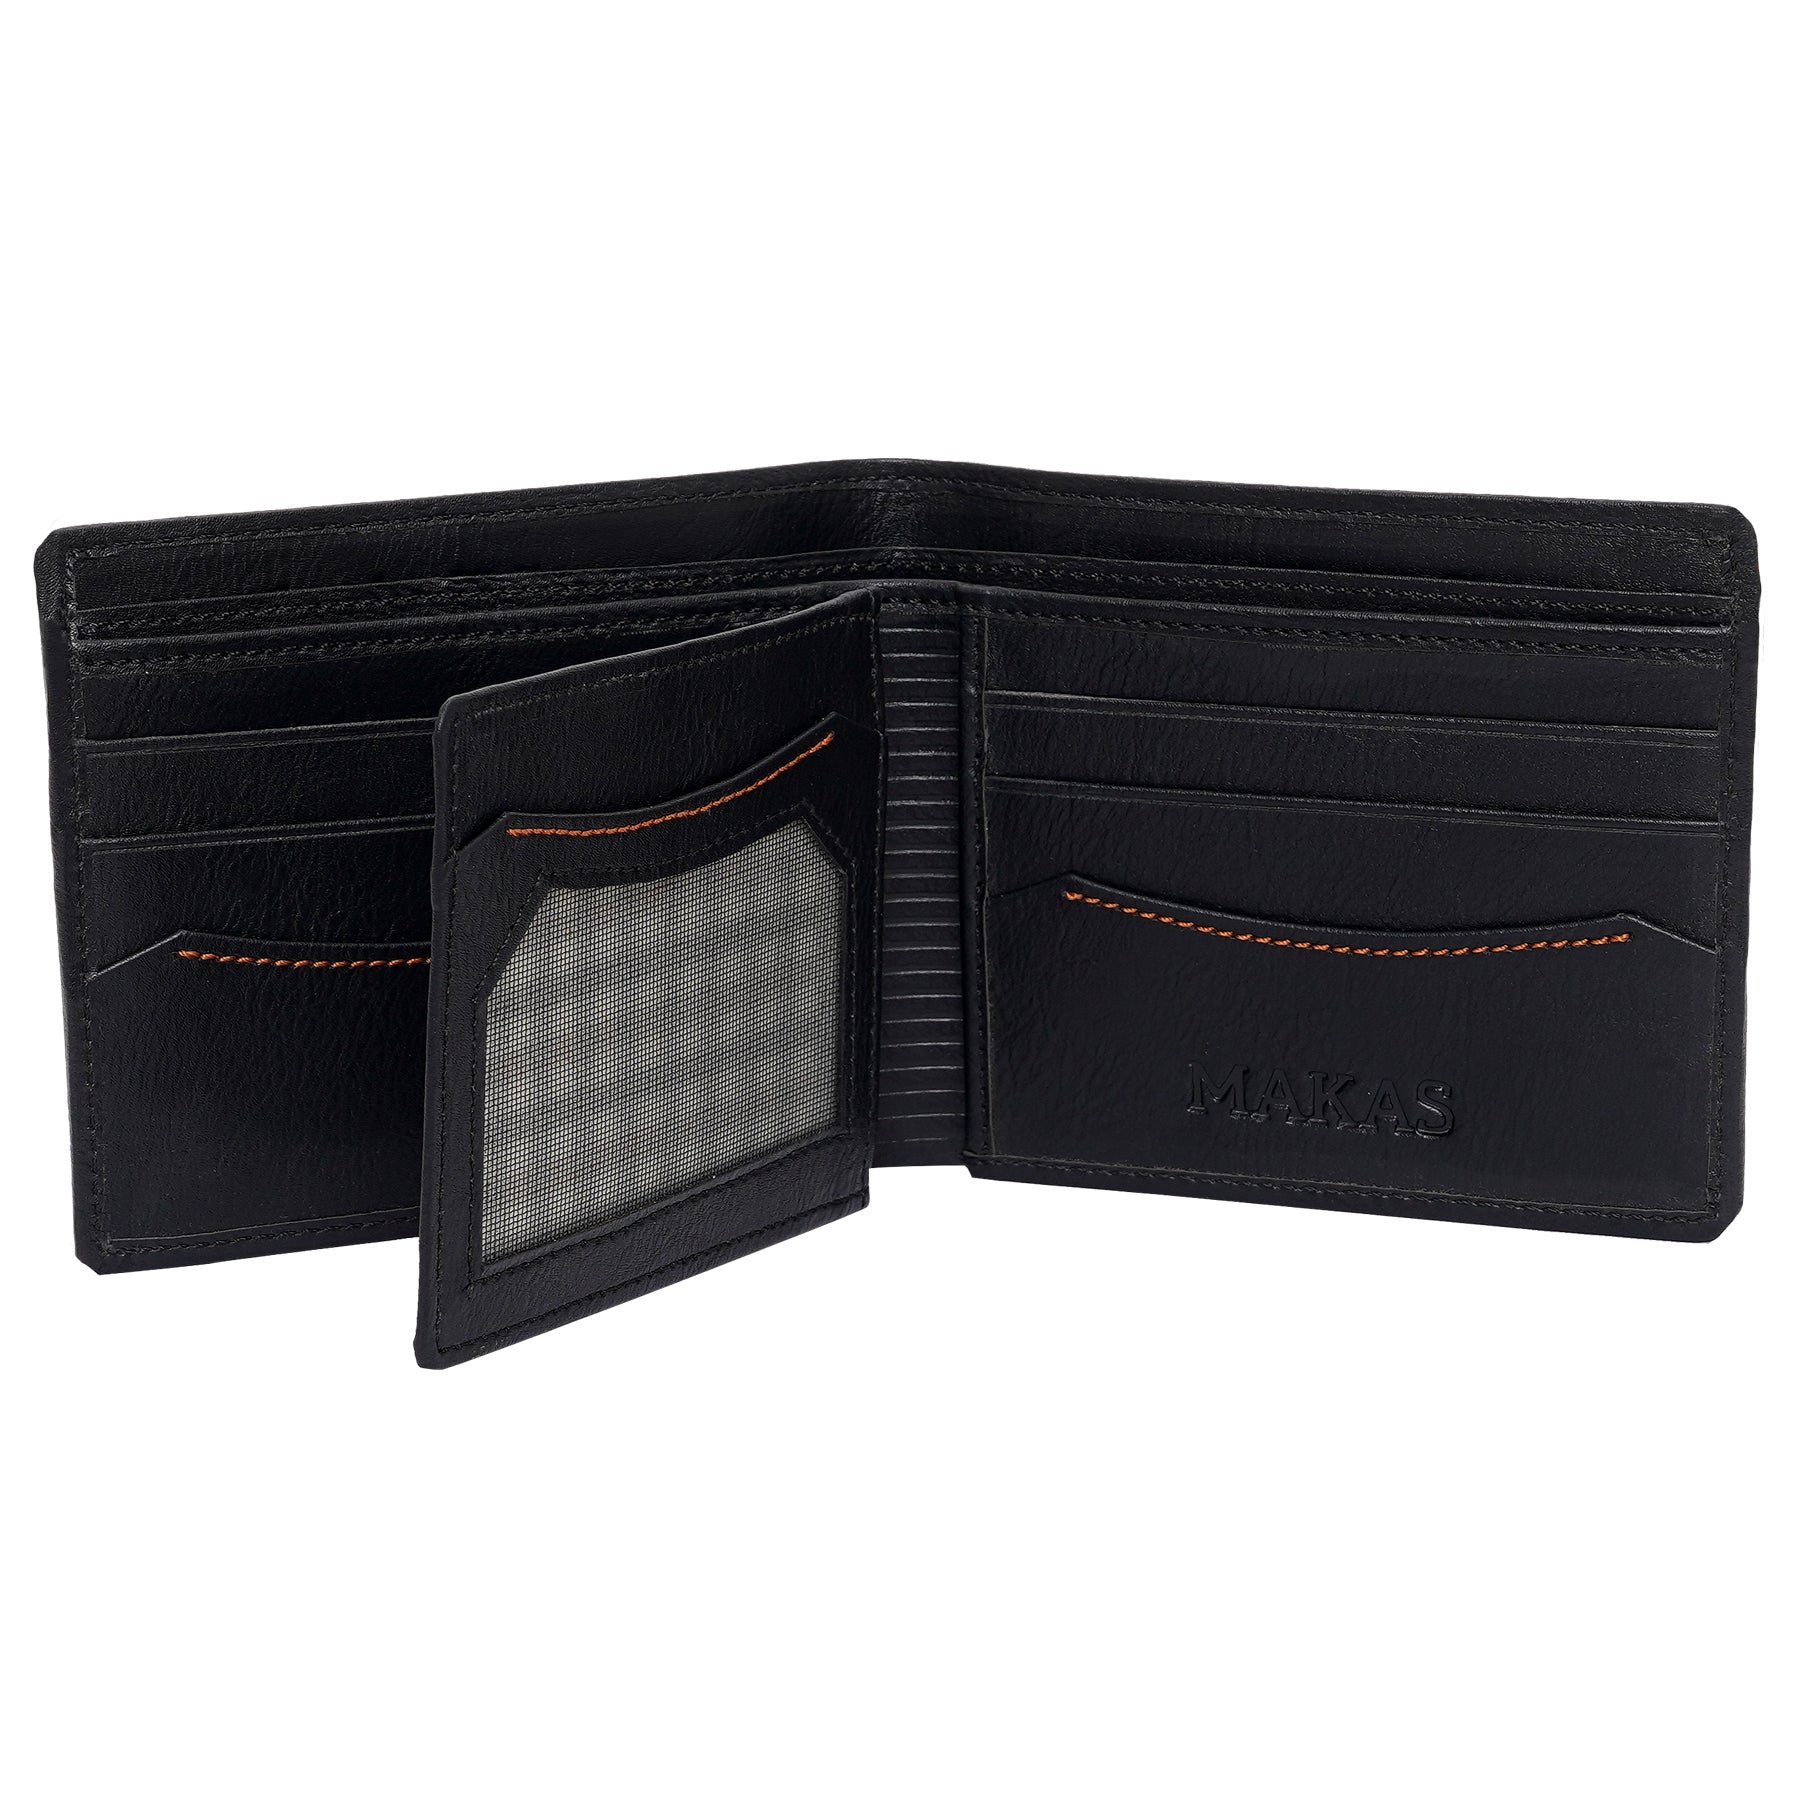 Makas men's wallet , internal look 2,color - Black